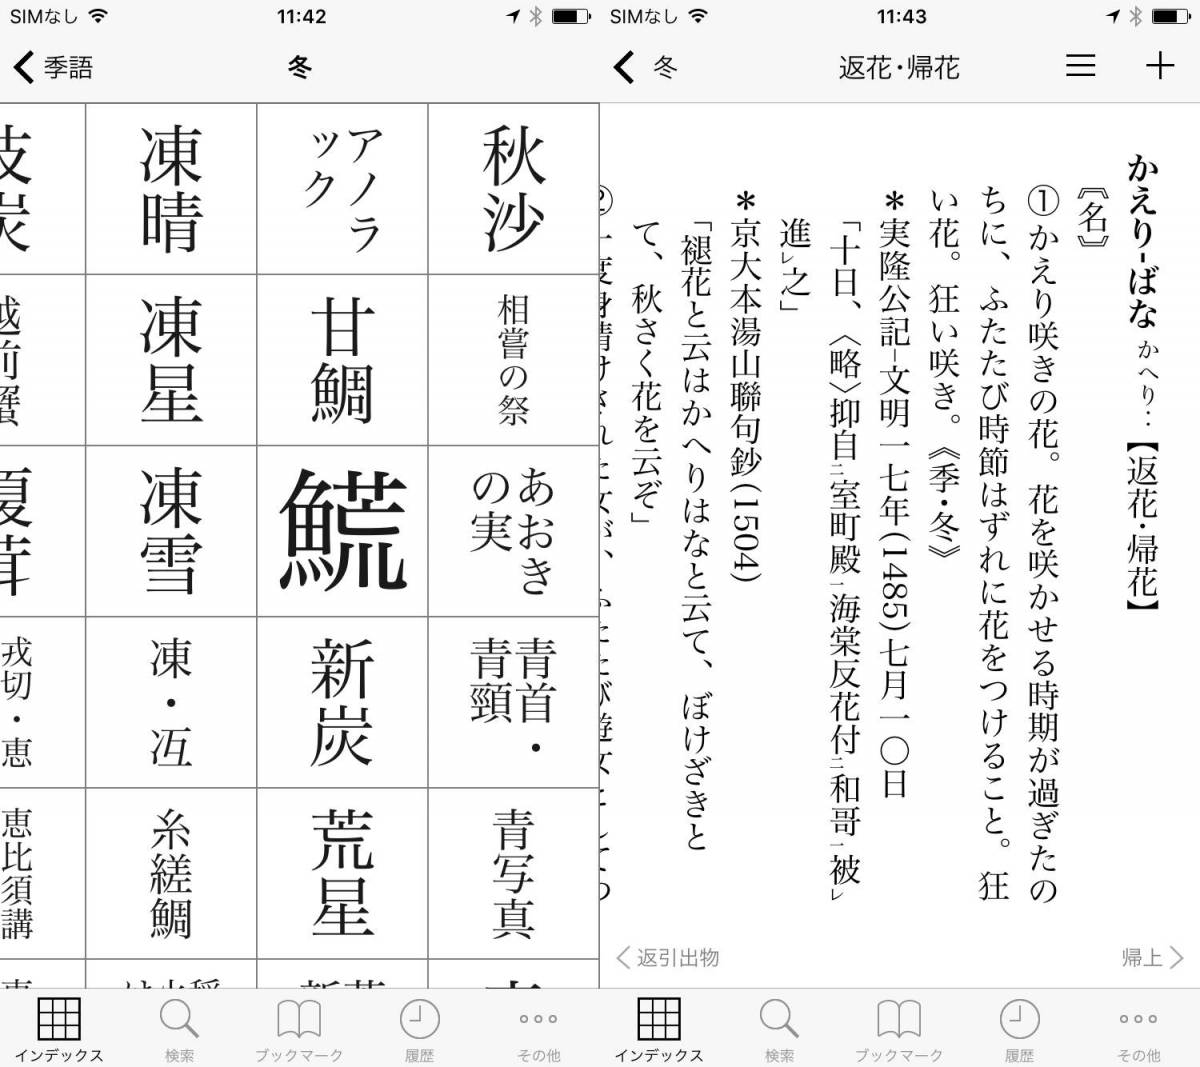 使い勝手良好 辞書アプリ 精選版 日本国語大辞典 リリース 大幅セール中 Appliv Topics